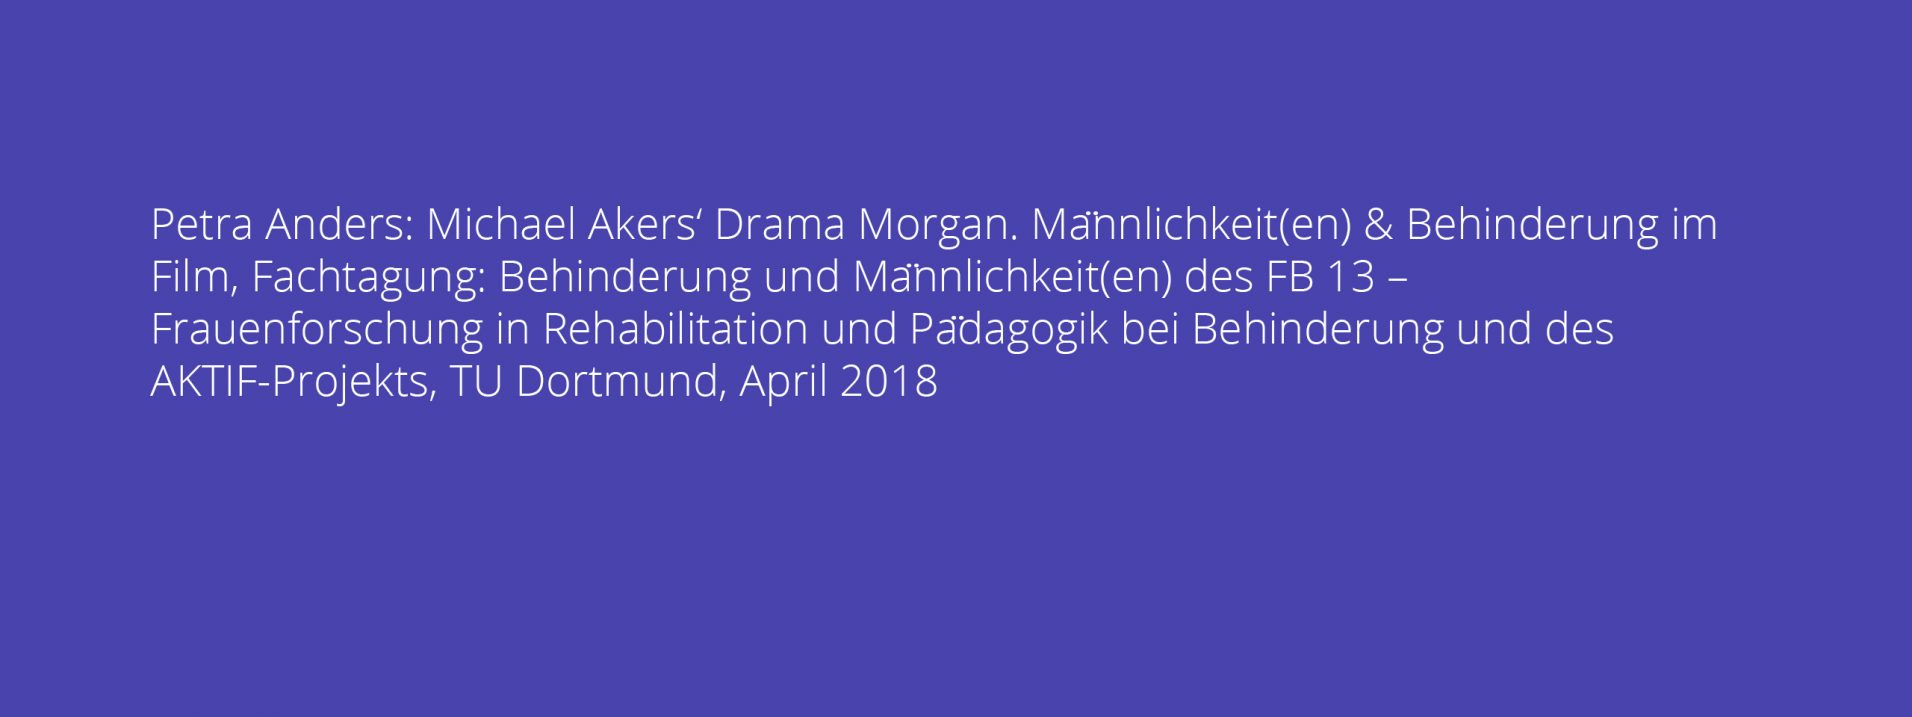 Petra Anders: Michael Akers‘ Drama Morgan. Männlichkeit(en) & Behinderung im Film, Fachtagung: Behinderung und Männlichkeit(en) des FB 13 – Frauenforschung in Rehabilitation und Pädagogik bei Behinderung und des AKTIF-Projekts, TU Dortmund, April 2018